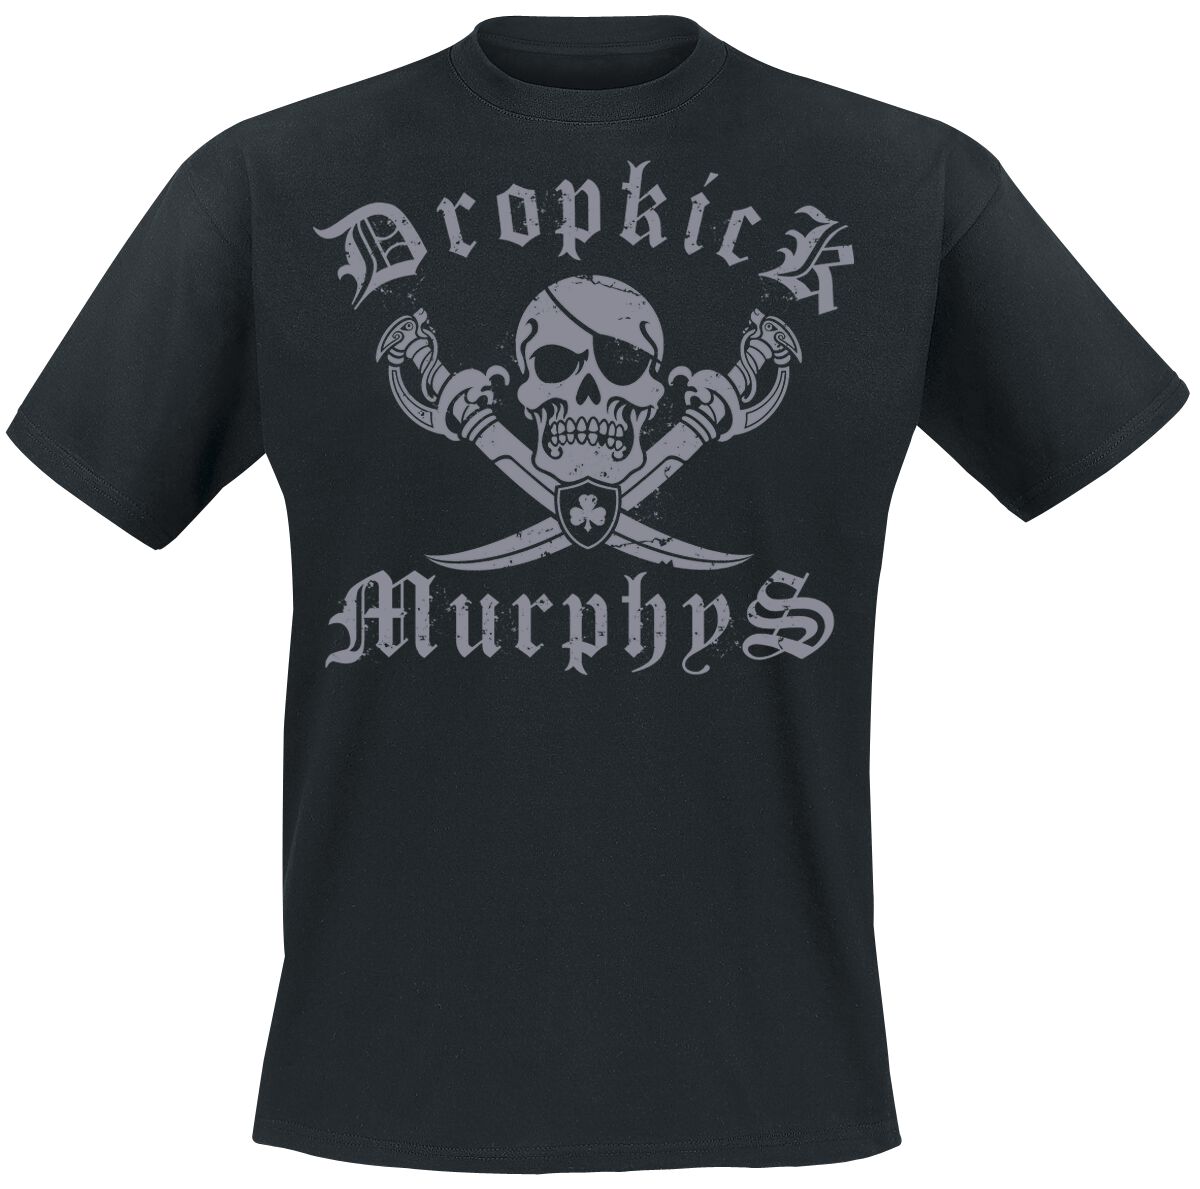 dropkick murphys t-shirt - jolly roger - m bis xxl - fÃ¼r mÃ¤nner - grÃ¶ÃŸe xl - - lizenziertes merchandise! schwarz